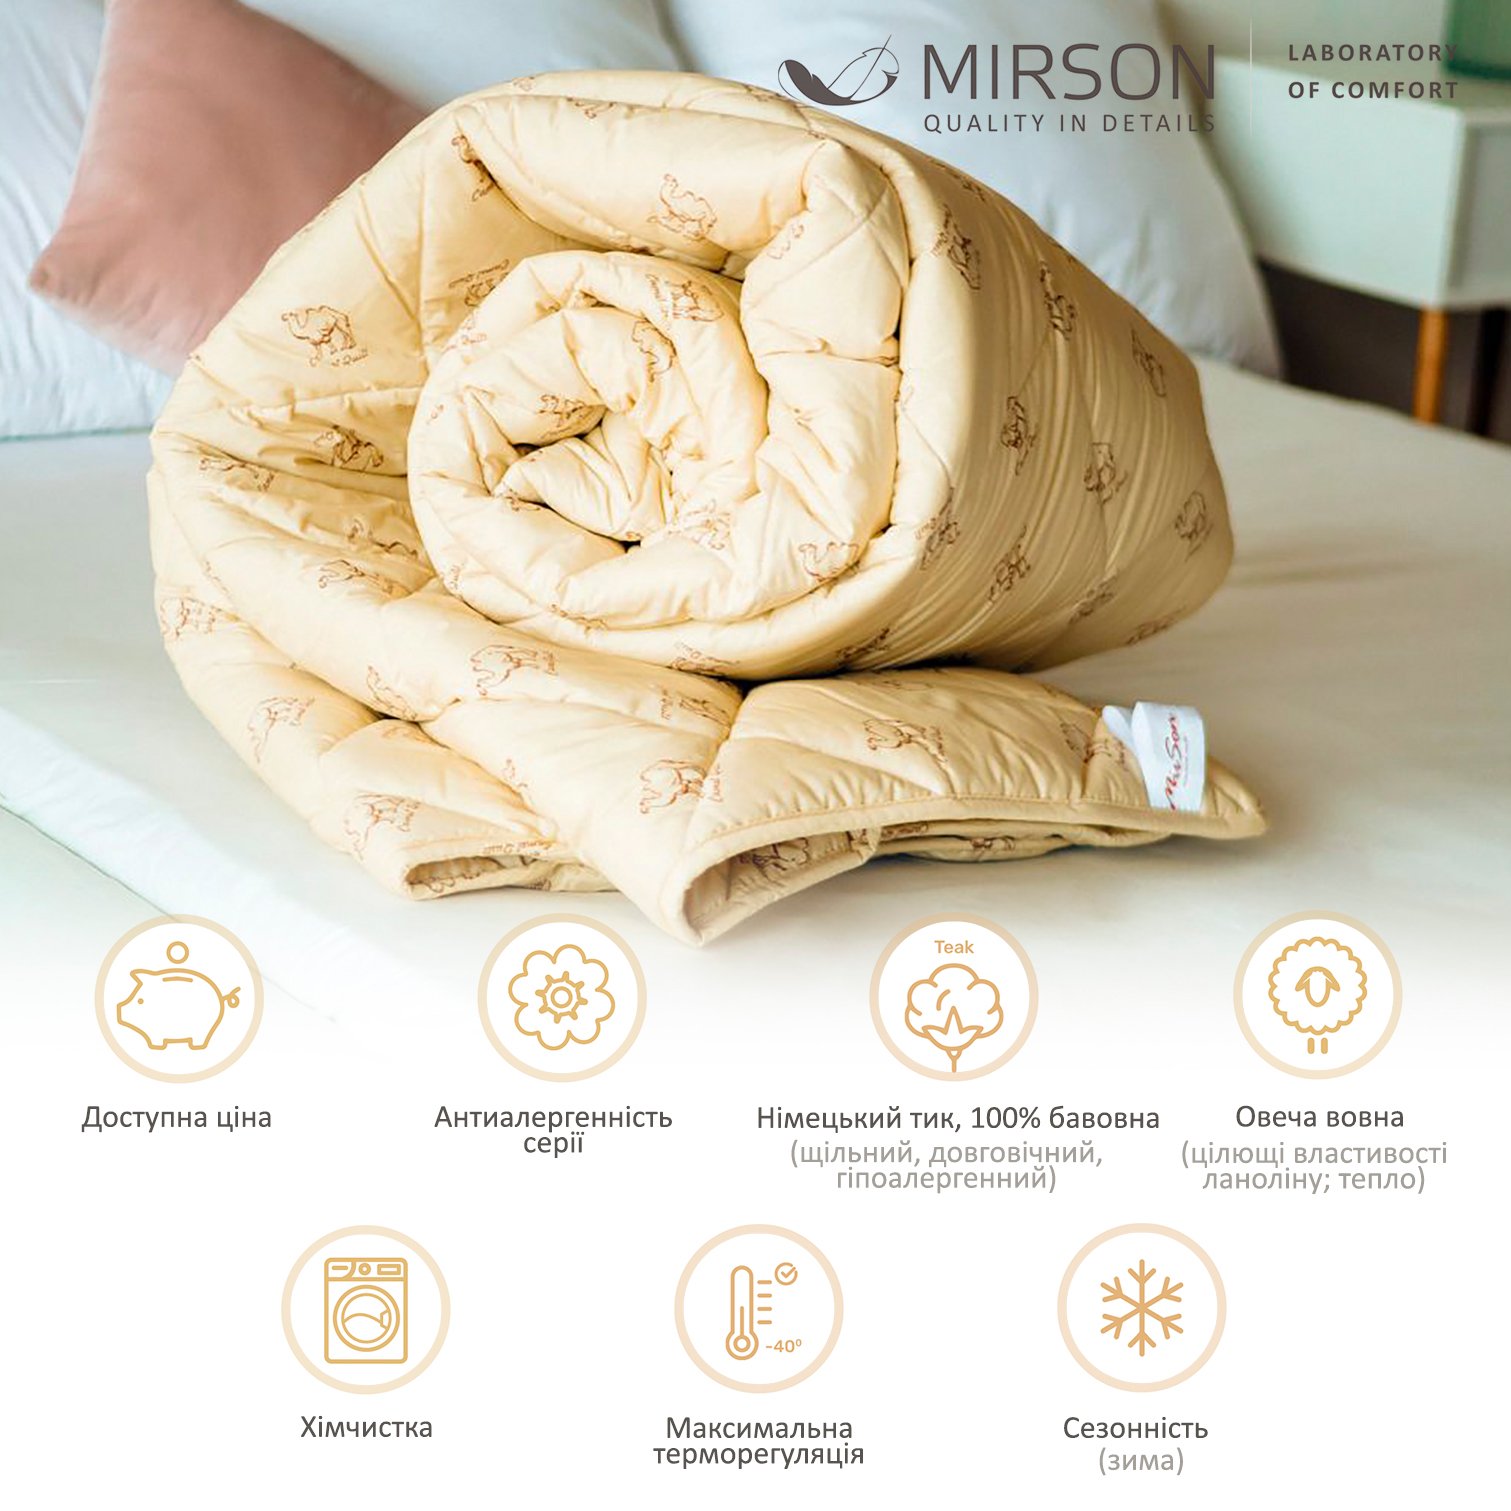 Одеяло шерстяное MirSon Gold Camel №024, зимнее, 140x205 см, кремовое - фото 4